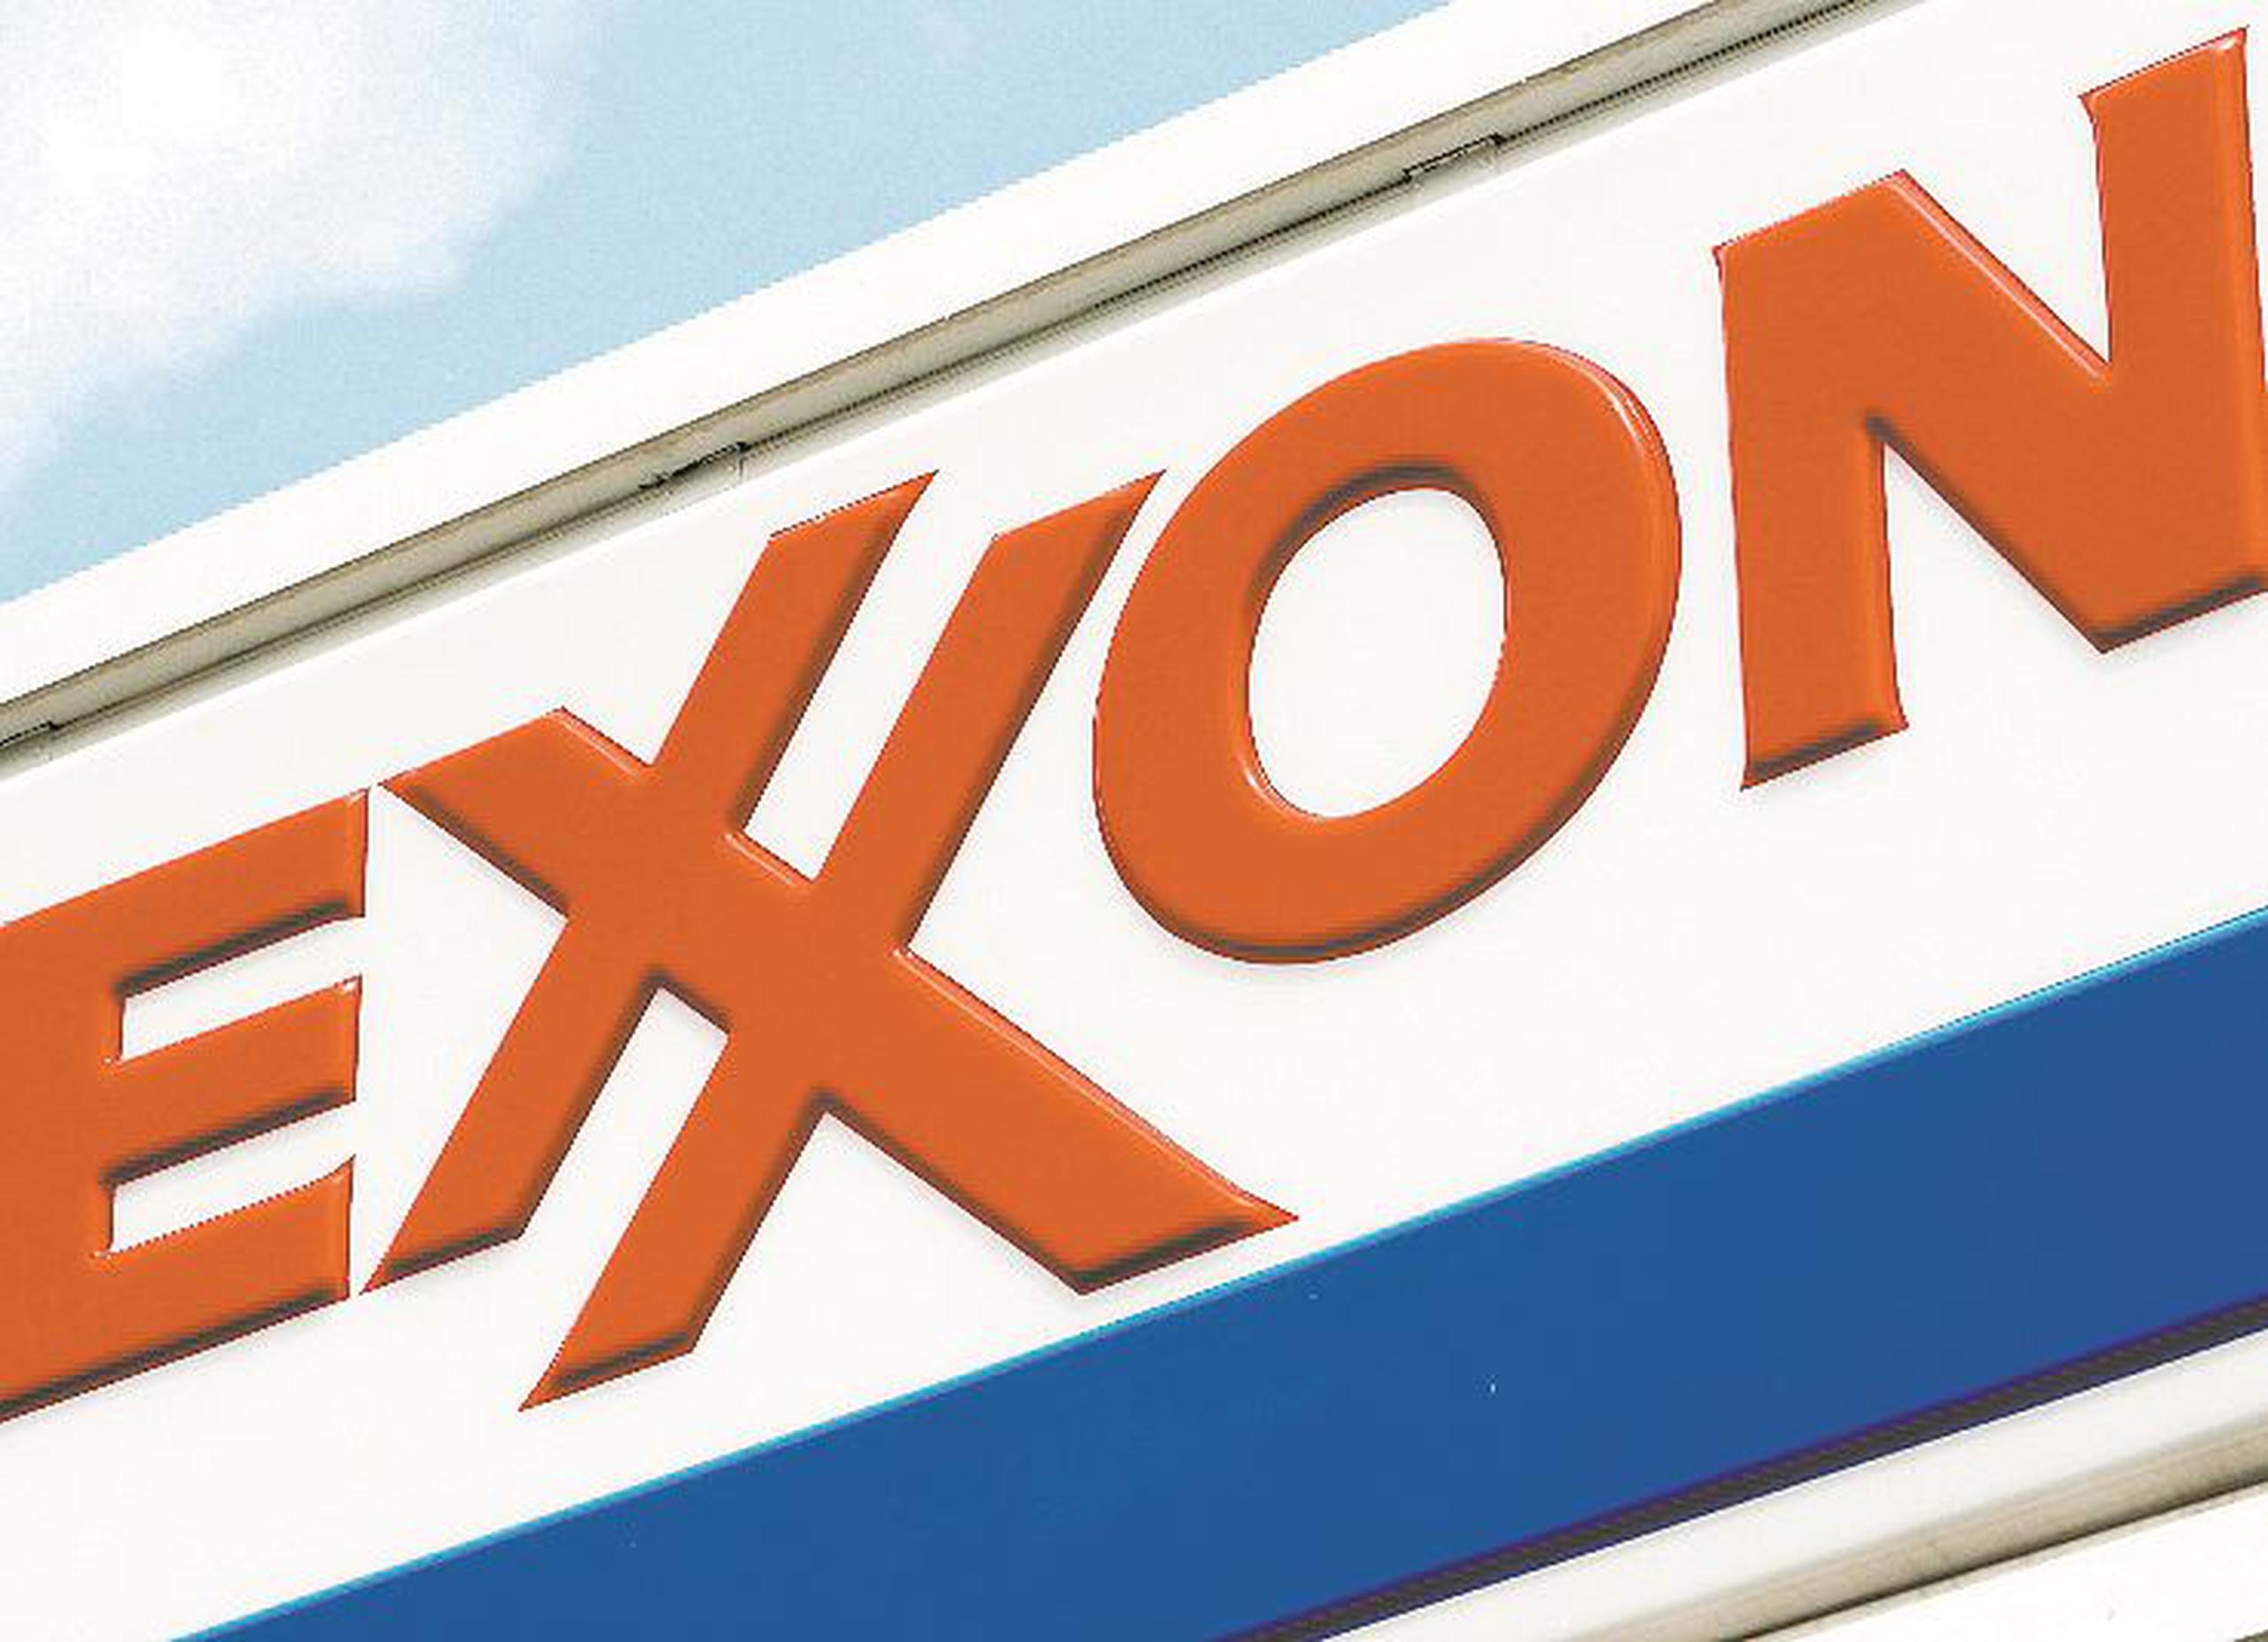 La petrolera había anunciado en septiembre un acuerdo para vender la refinería a PBF Energy por más de $500 millones, pero esa firma paralizó la transacción hasta que Exxon Mobil demostrara que la planta estaba en buen estado. (Archivo / GFR Media)